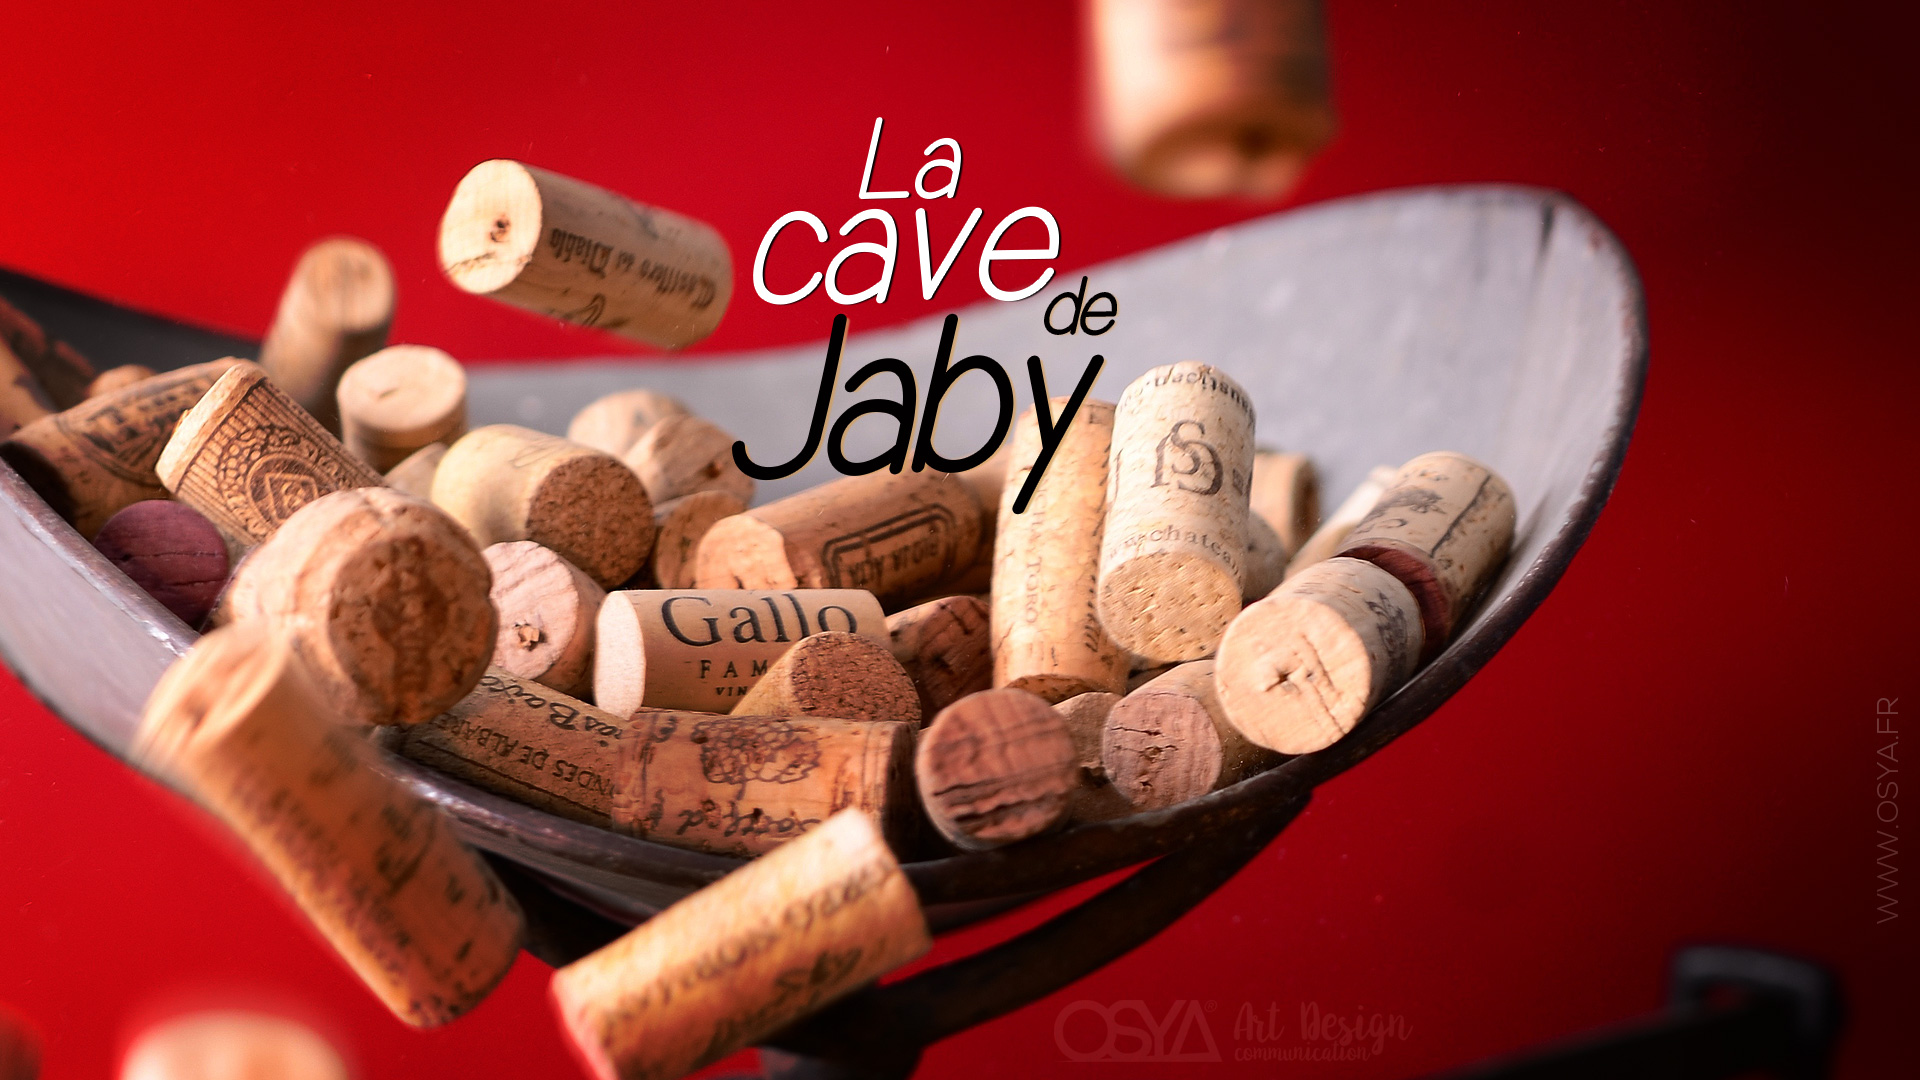 La Cave de Jaby